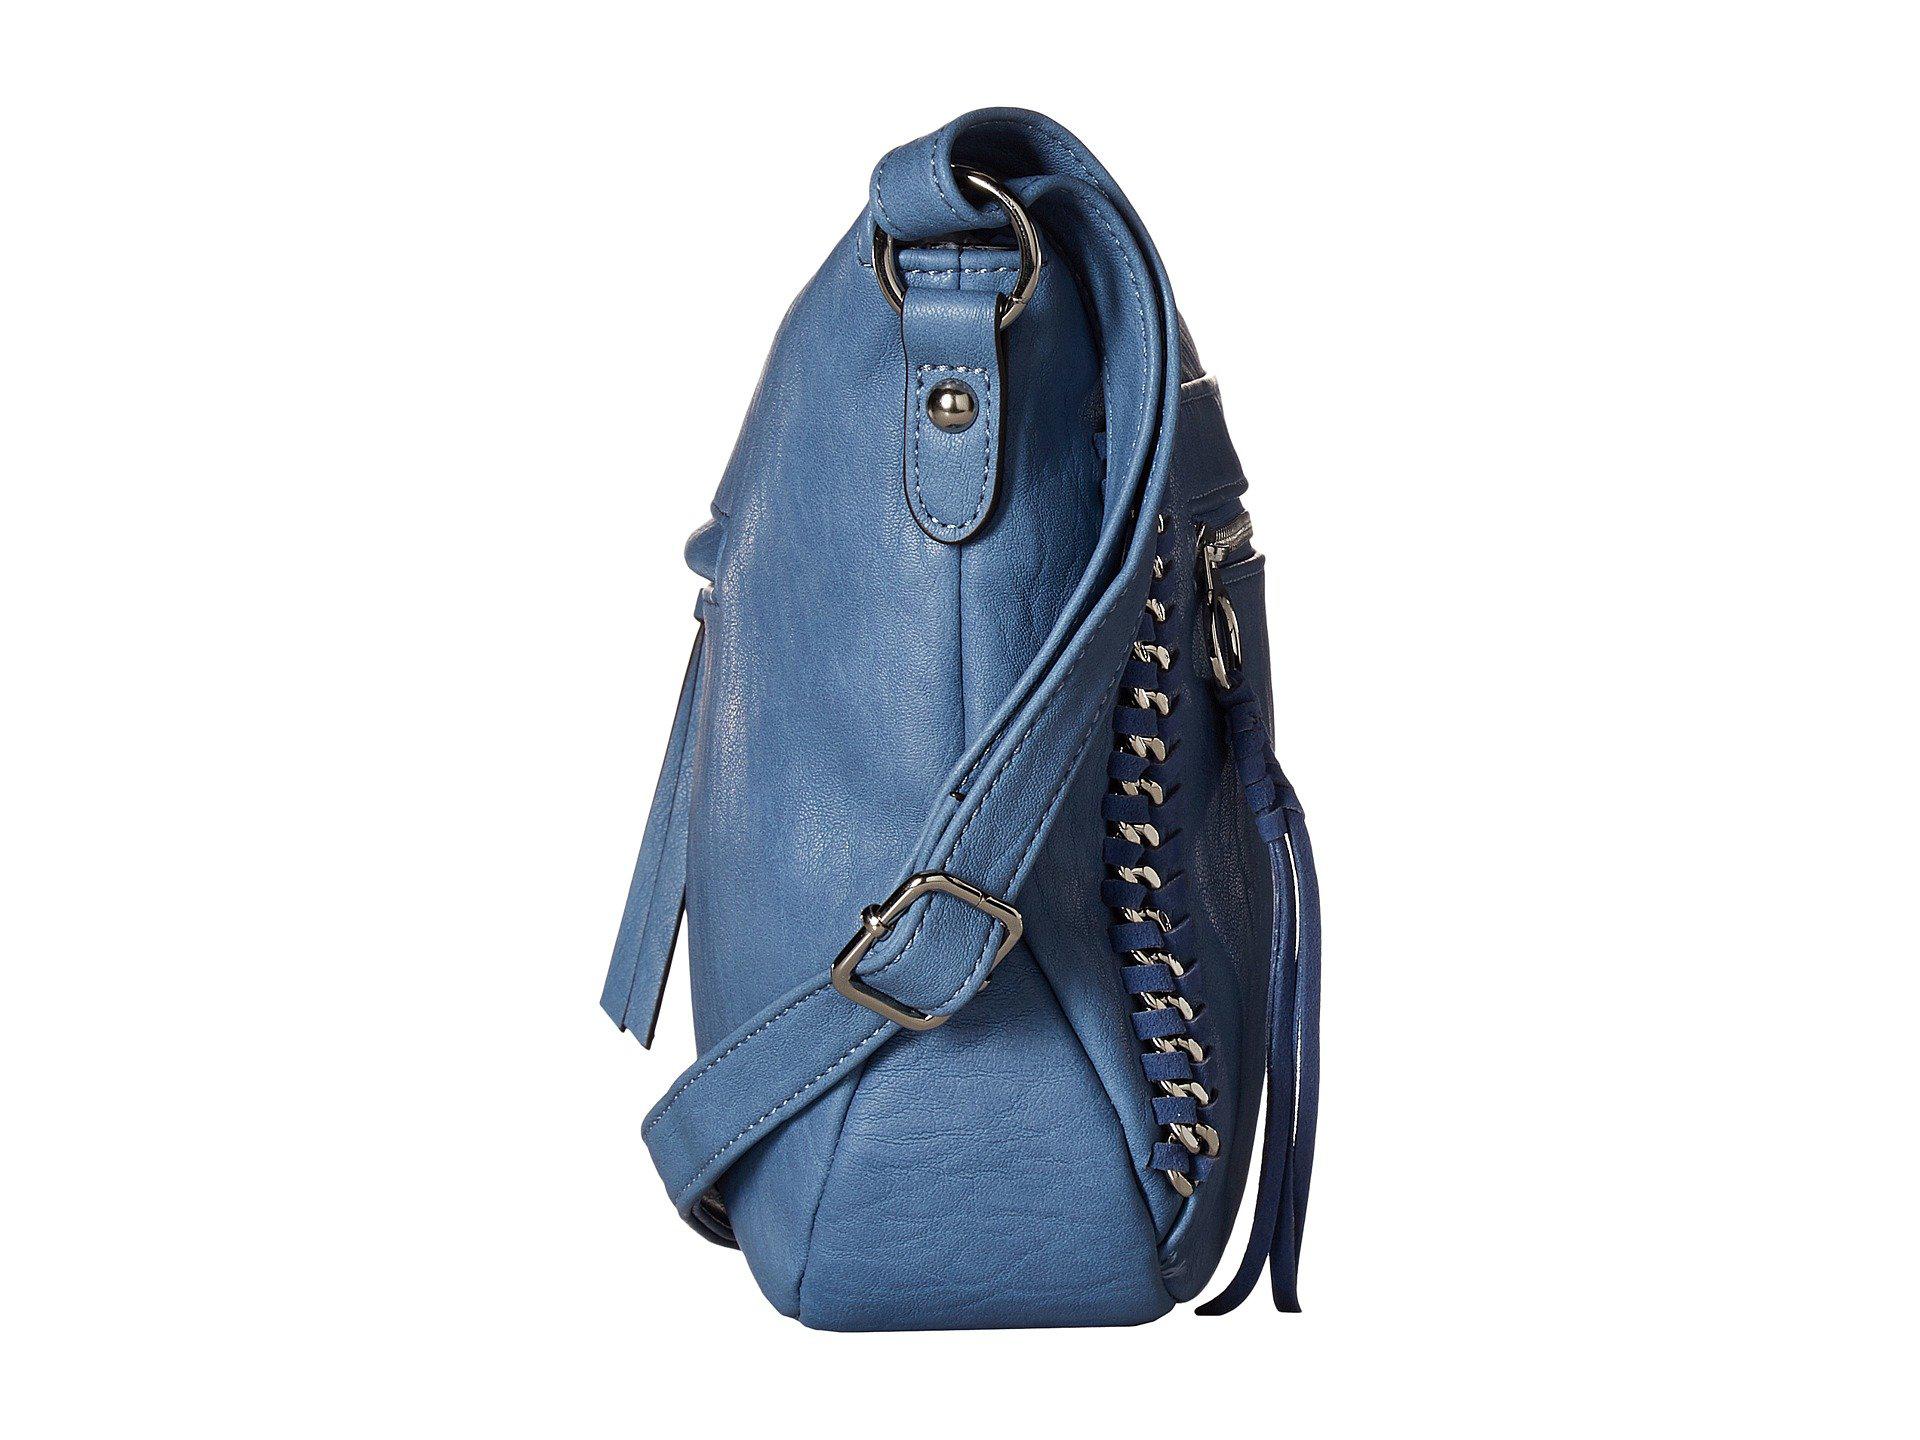 Jessica Simpson Blue Shoulder Bags